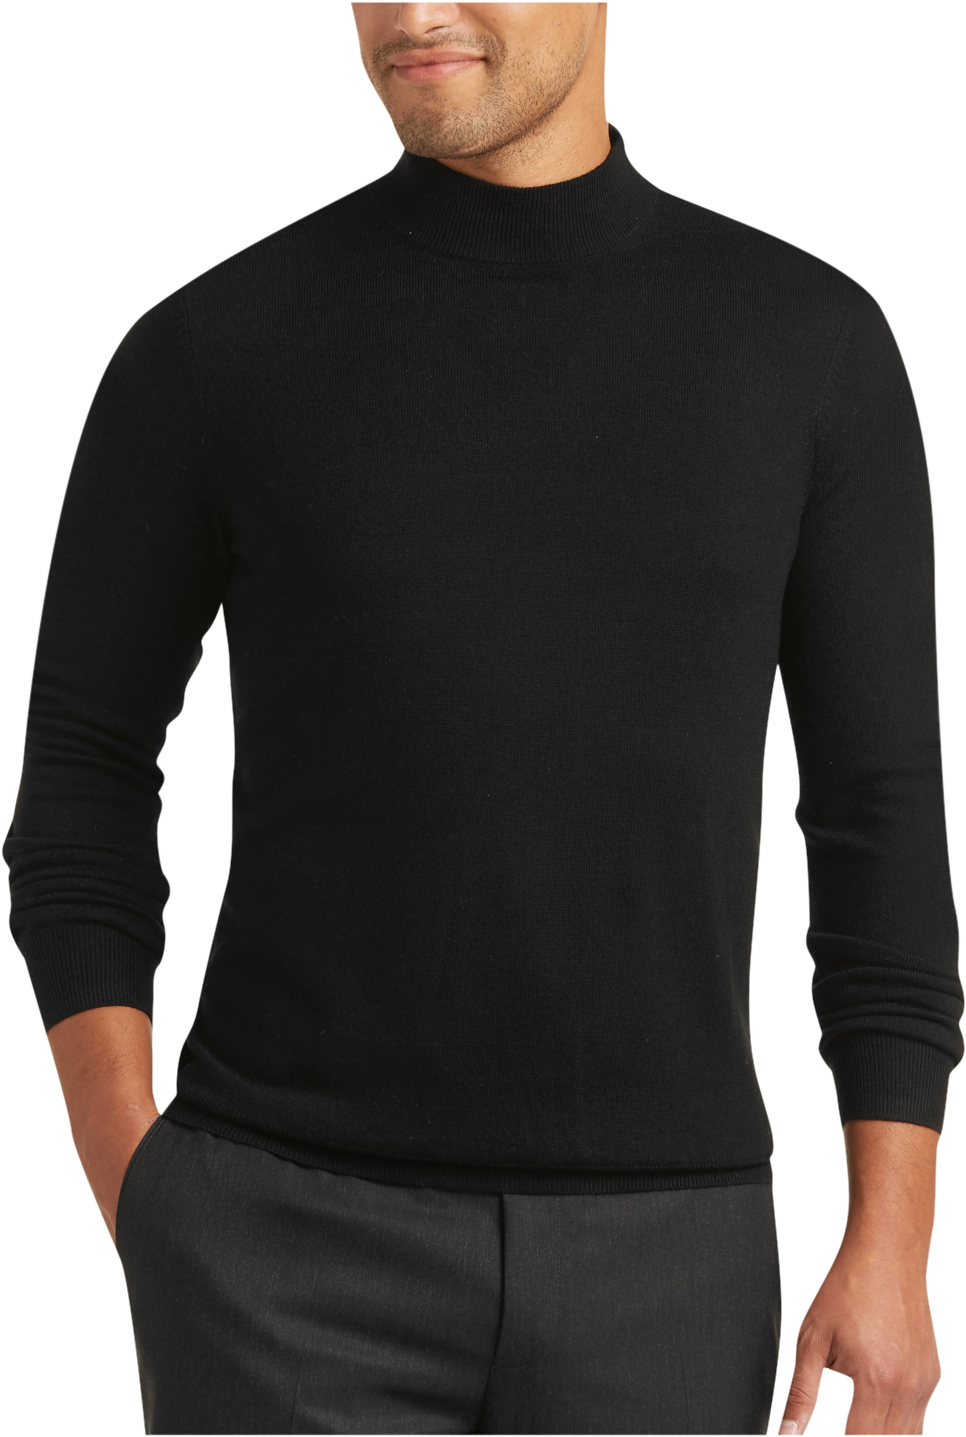 Men's Clothing & Accessories: Men's Sweaters Mock Neck